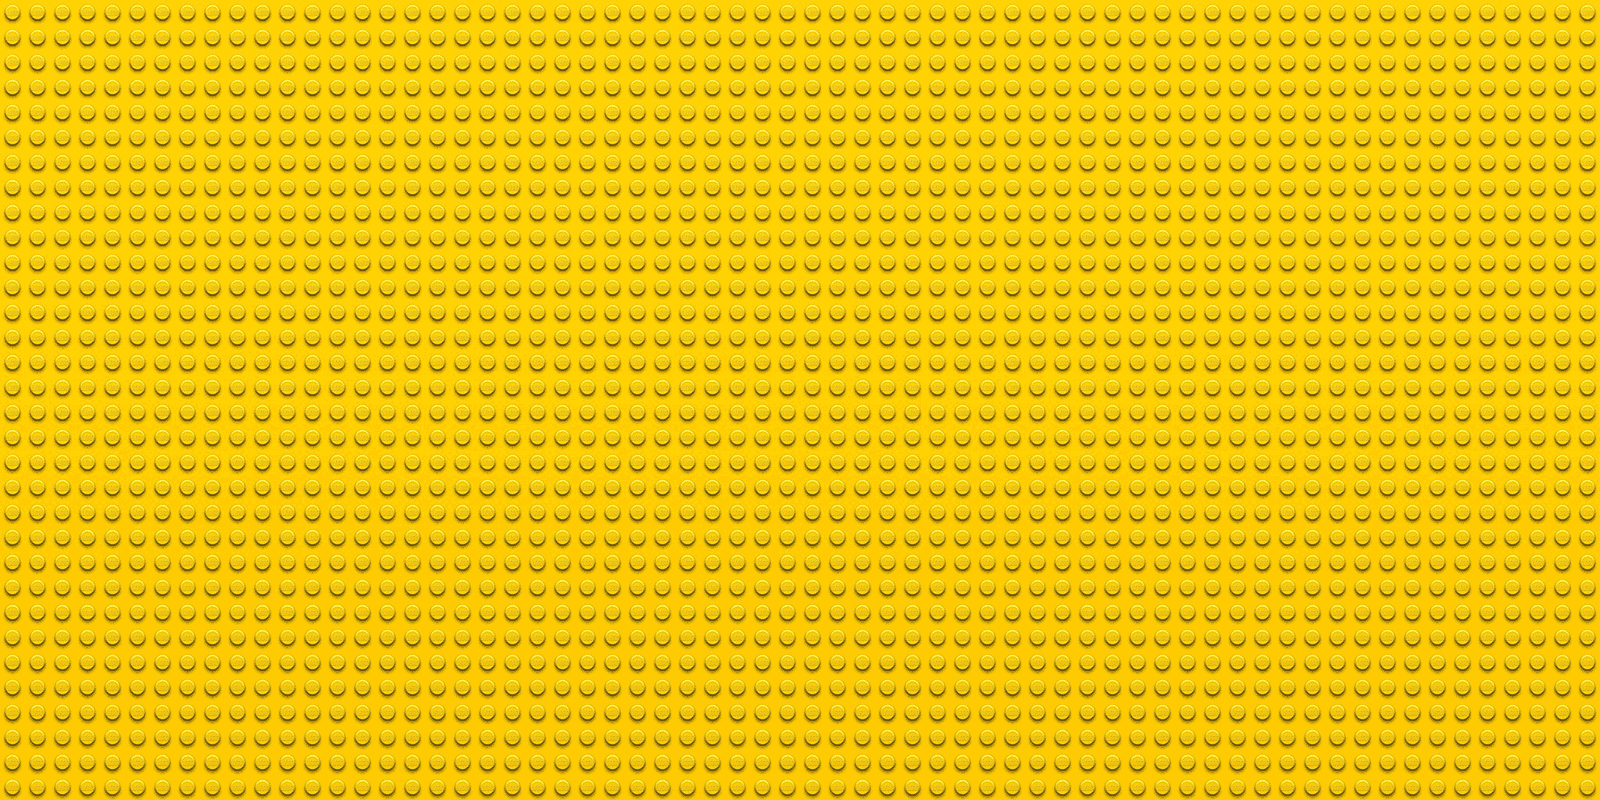 Lego background